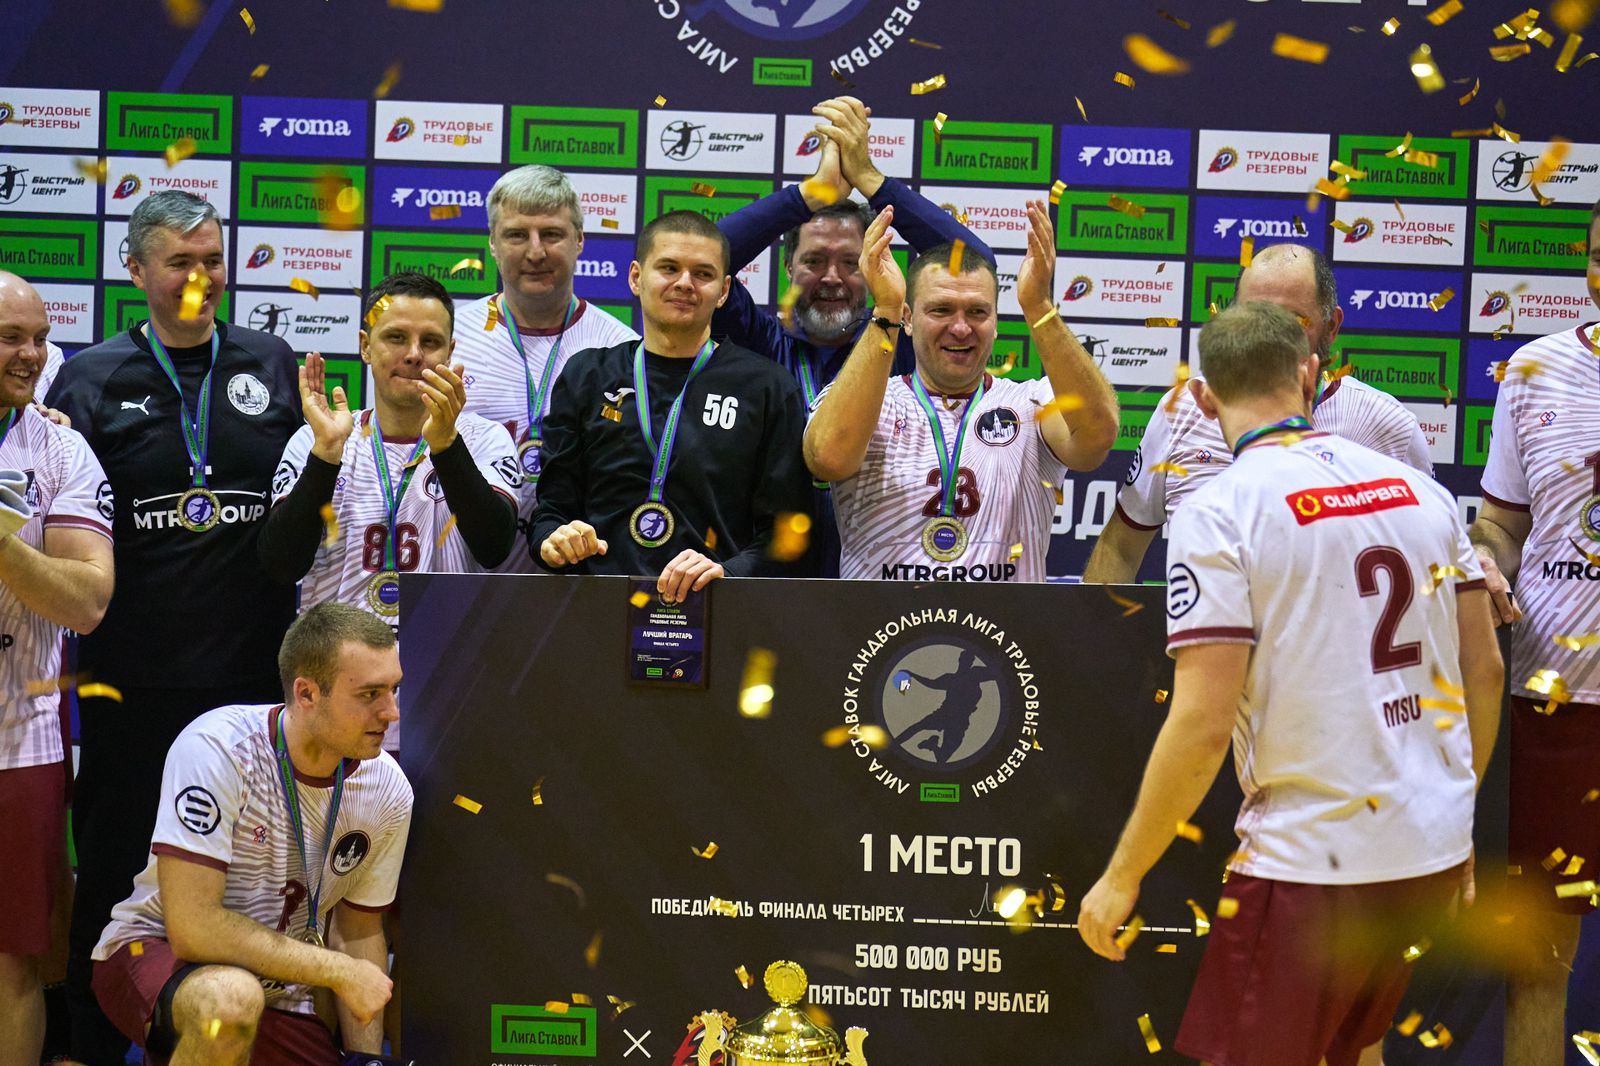 Команда МГУ стала чемпионом Лиги ставок — Федеральной Гандбольной Лиги «Трудовые резервы»